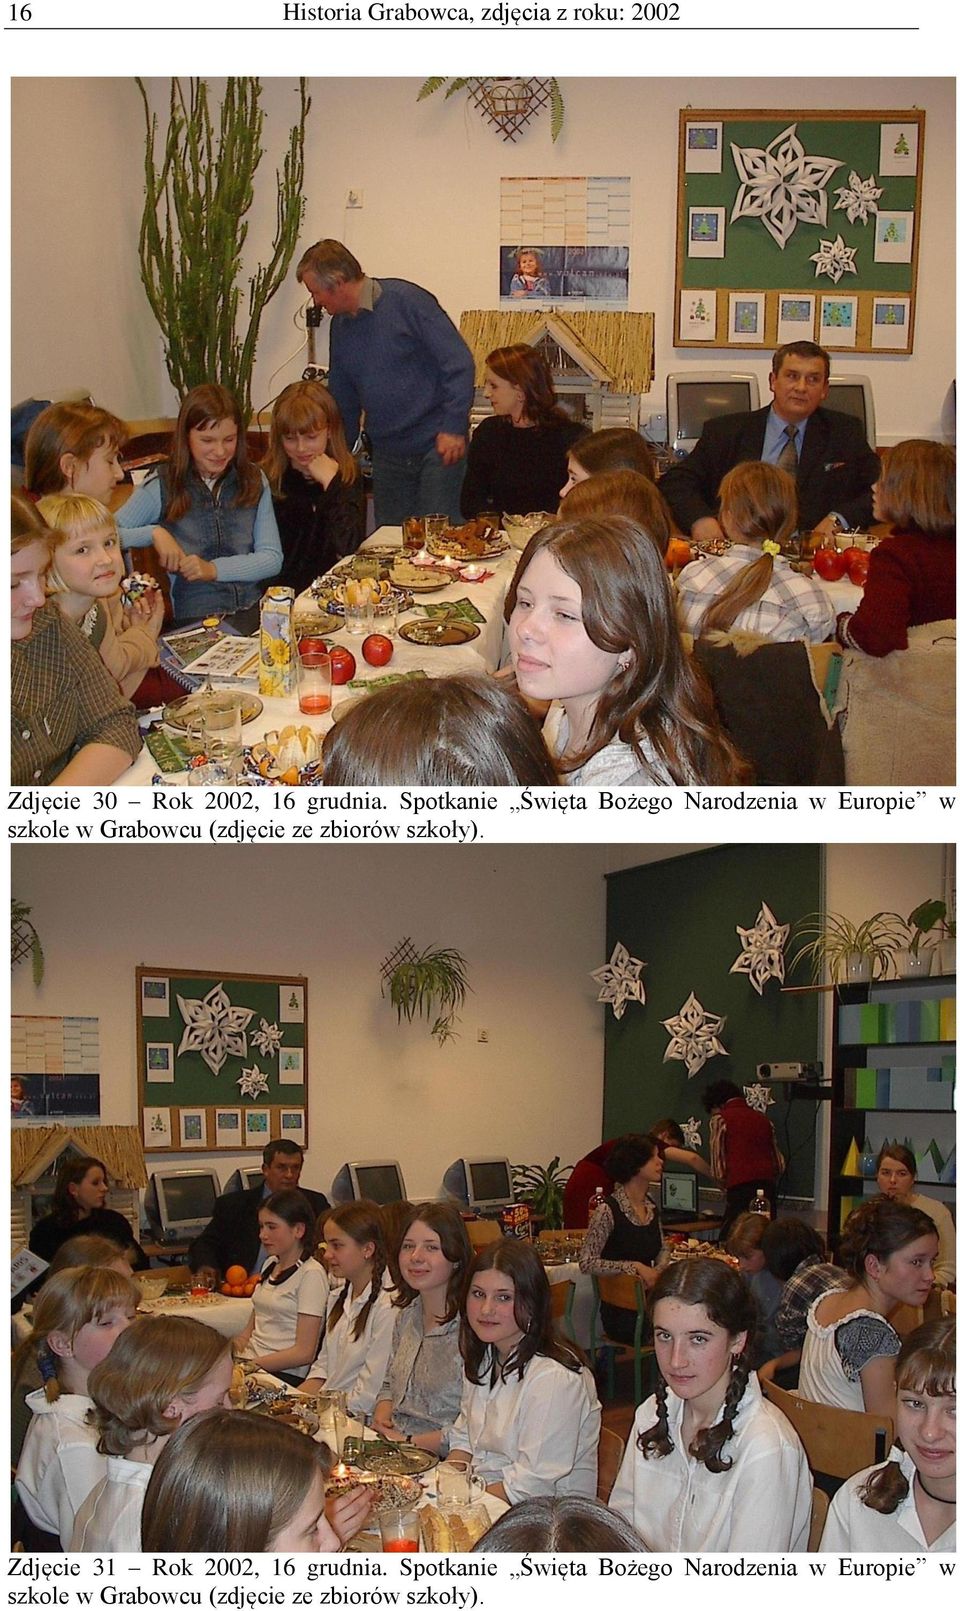 Spotkanie Święta Bożego Narodzenia w Europie w szkole w Grabowcu (zdjęcie